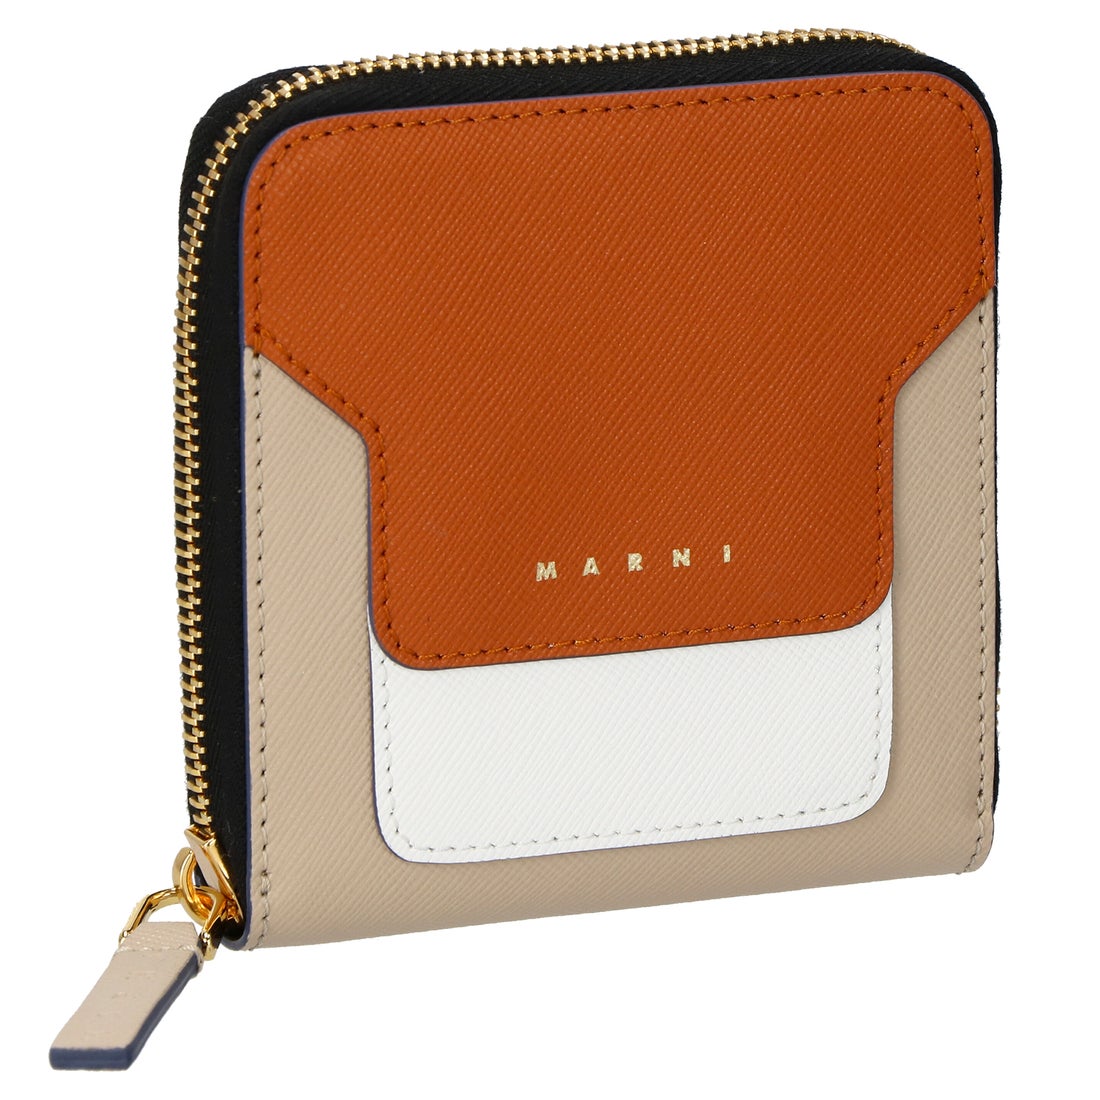 マルニ MARNI 二つ折り財布 PFMOQ09U11 LV520 レディース 財布 ジップアラウンド レザー ウォレット ラウンドファスナー  コンパクト ミニ財布 全6色 （オレンジ×ホワイト）